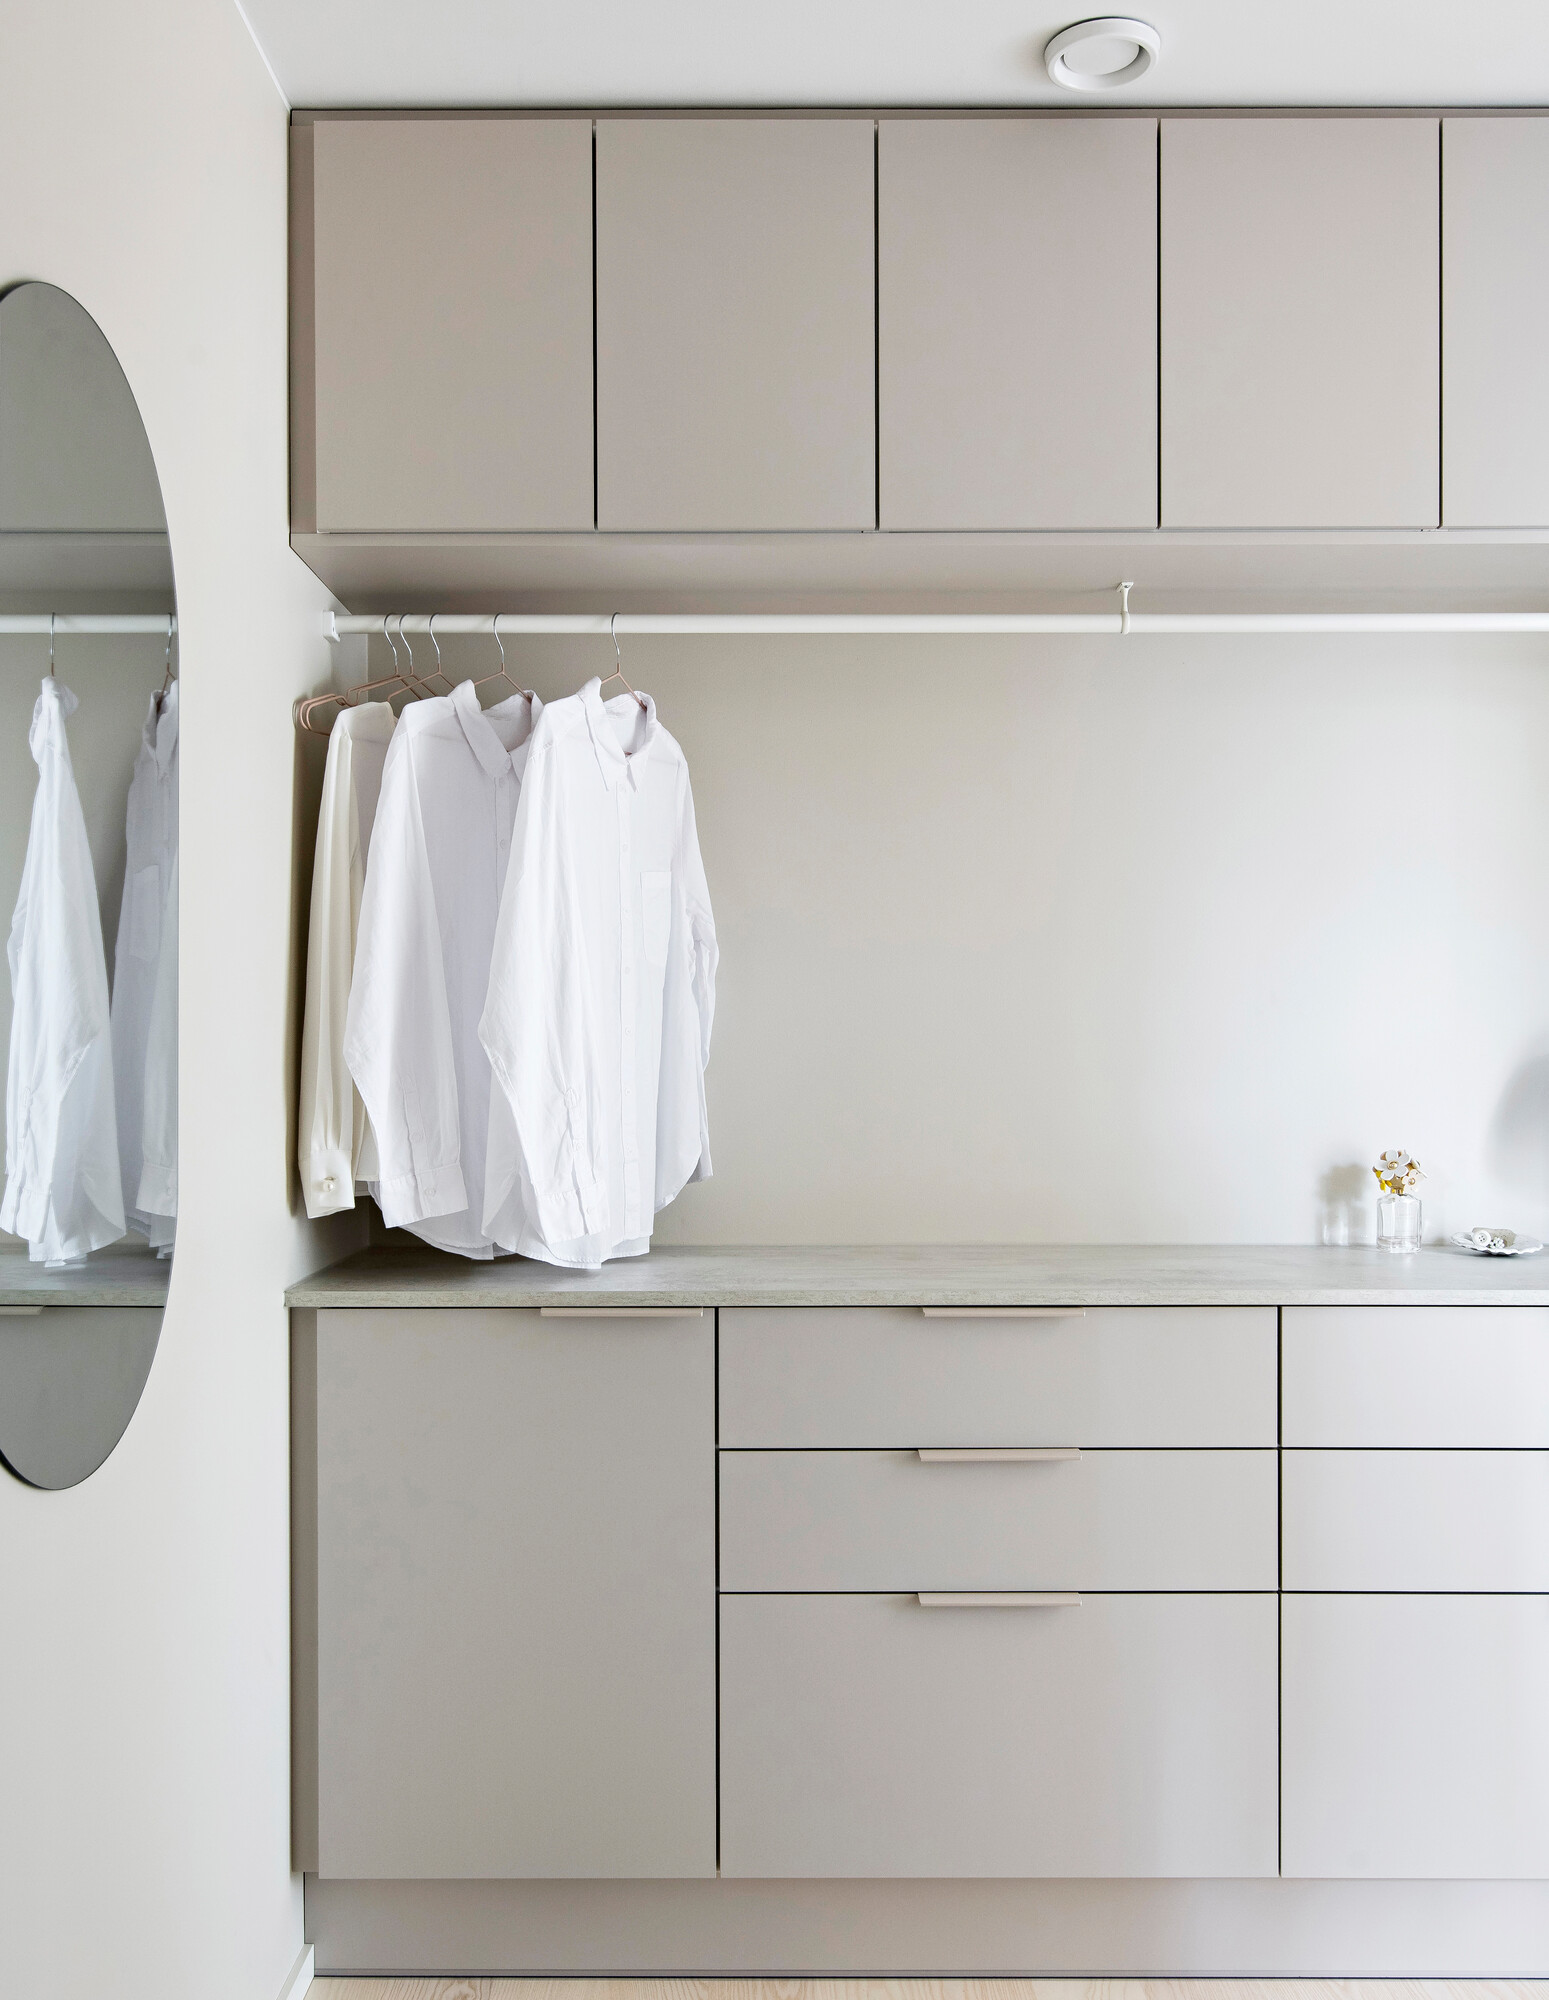 Yläkaappien alle on kiinnitetty vaatetanko, johon paidat saa kuivumaan suoraan pesukoneesta tai silityksen jälkeen. Pitkä taso toimii kodinhoitohuoneessa viikkauksessa ja lajittelussa.